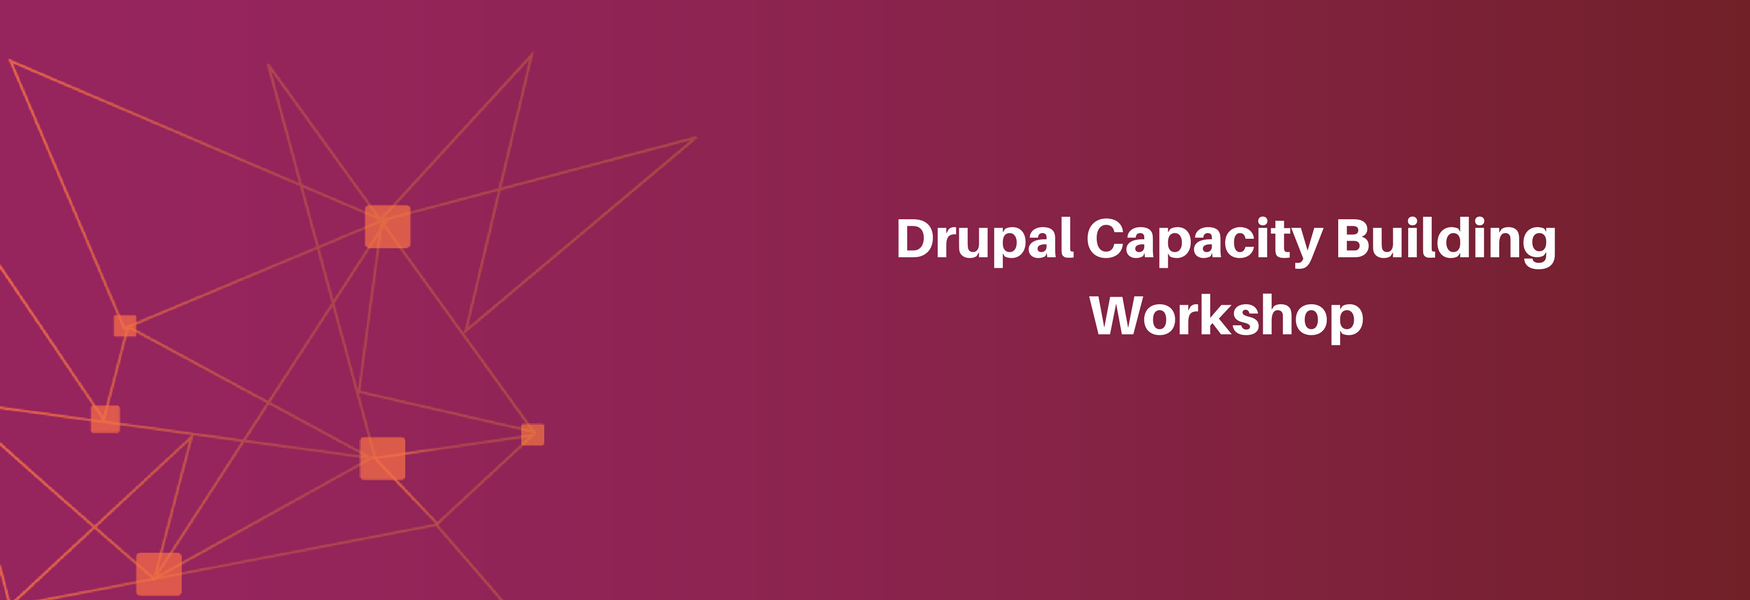 drupal workshop